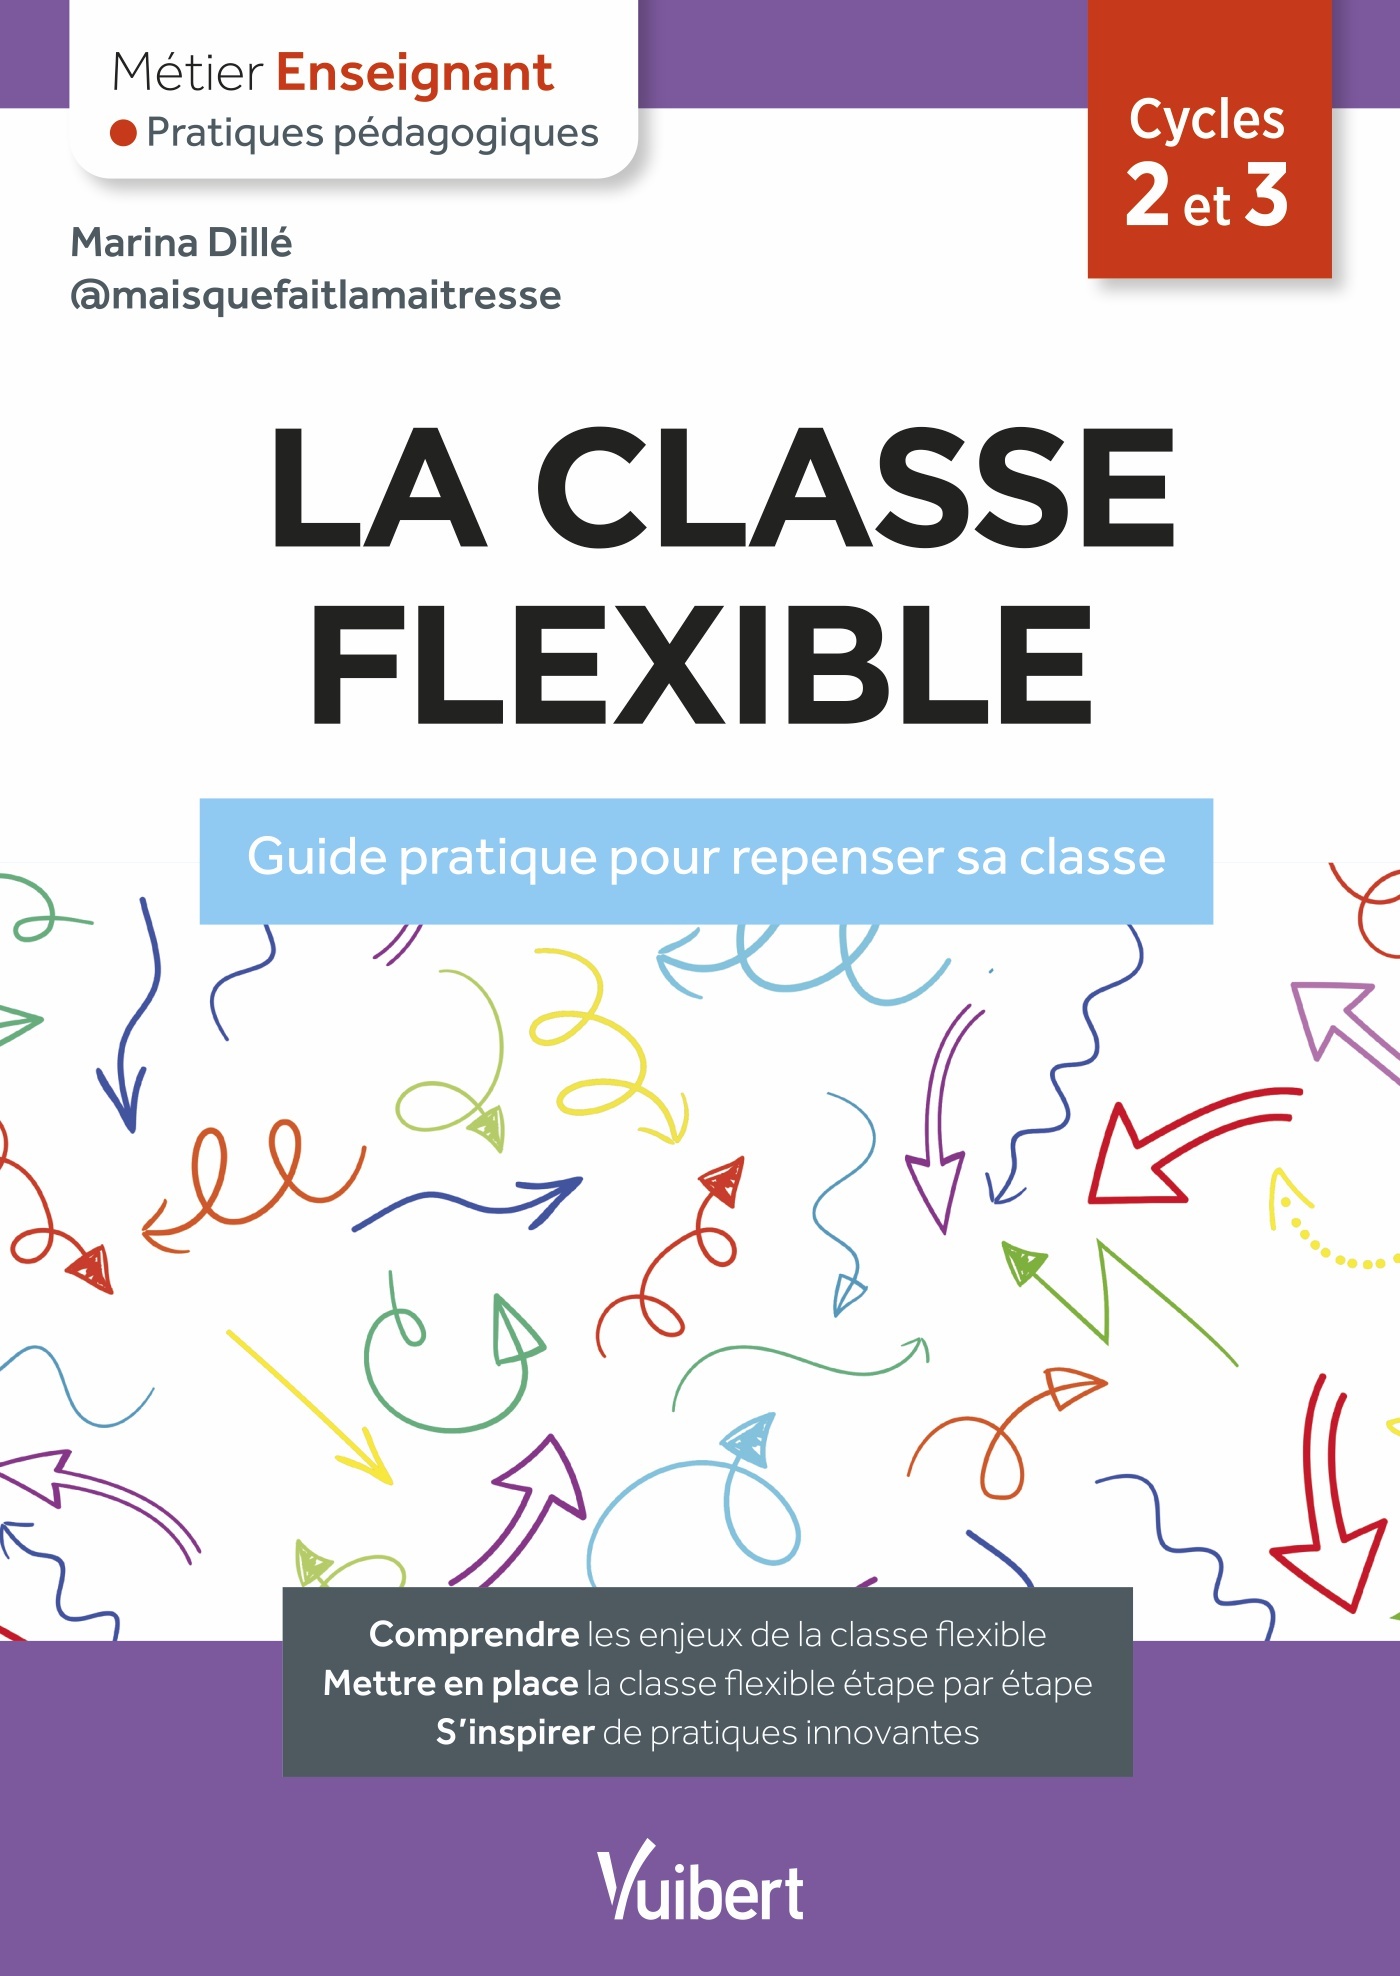 Classe flexible : 10 raisons de se lancer - Le blog de Plume !